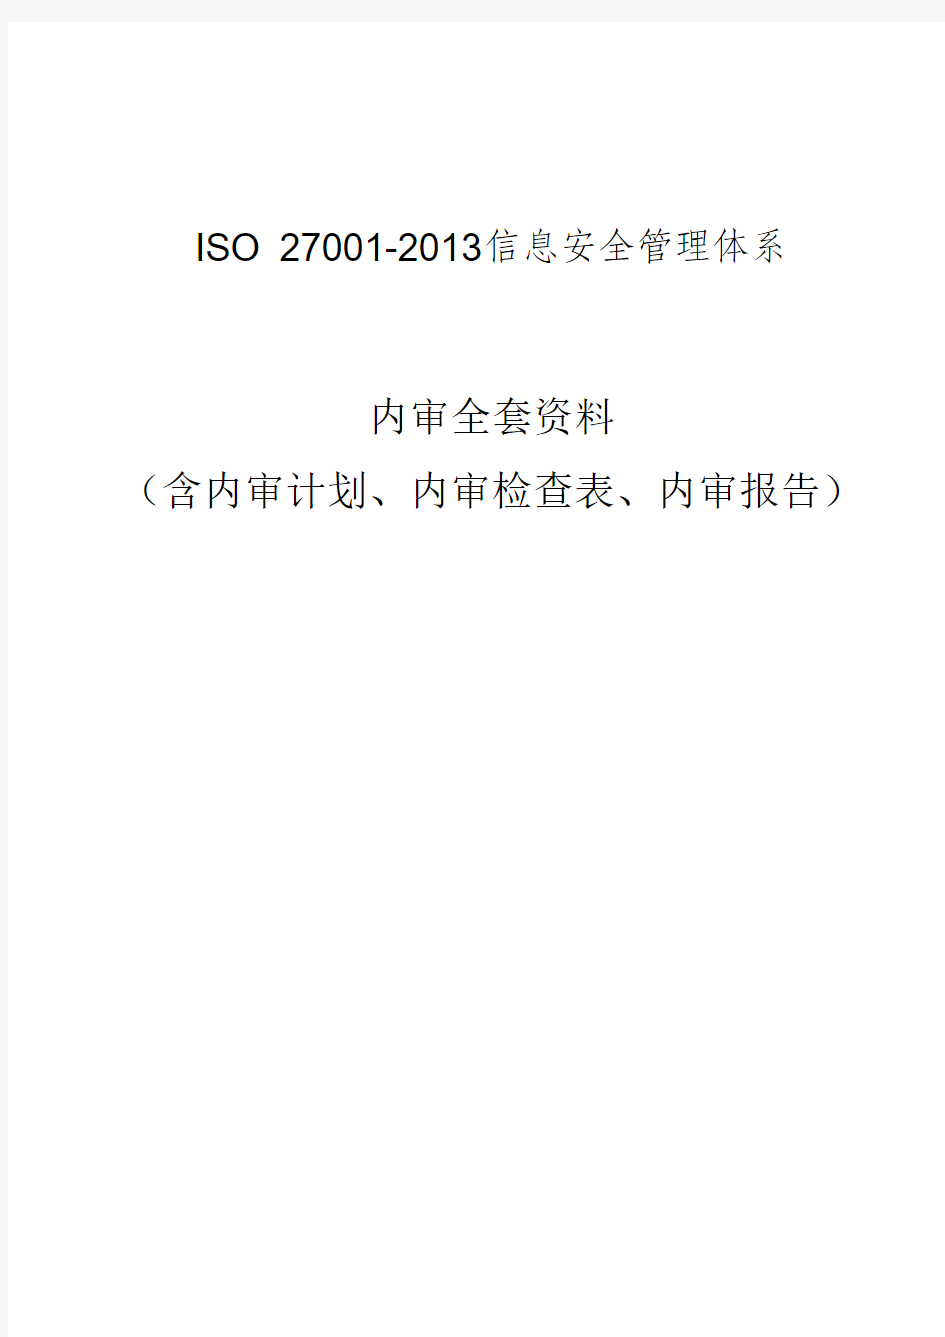 最新最完整版ISO27001信息安全管理体系内审全套资料